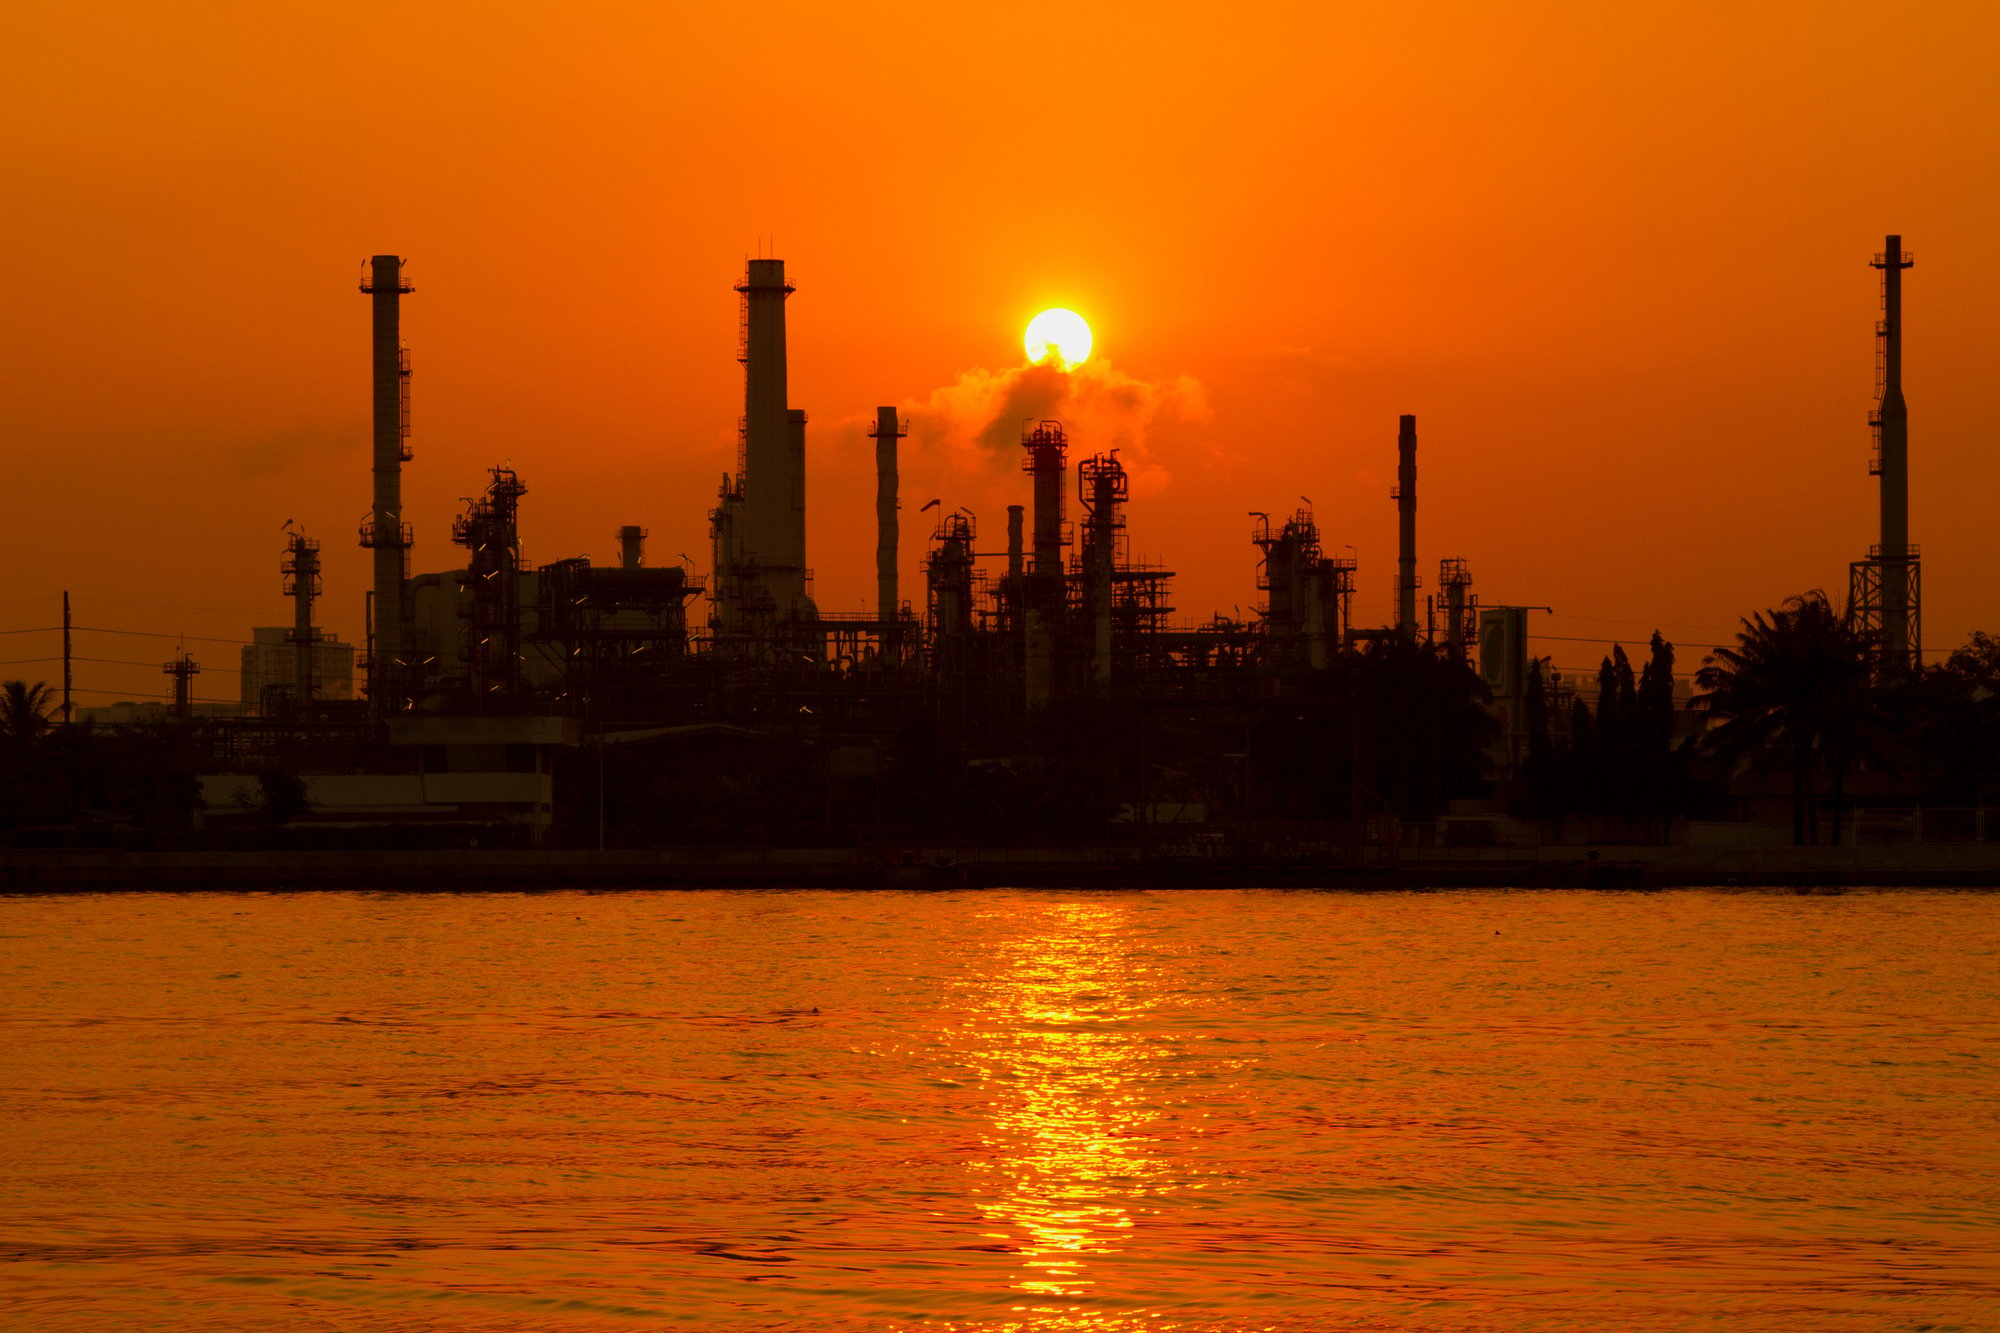 夕阳下的炼油厂